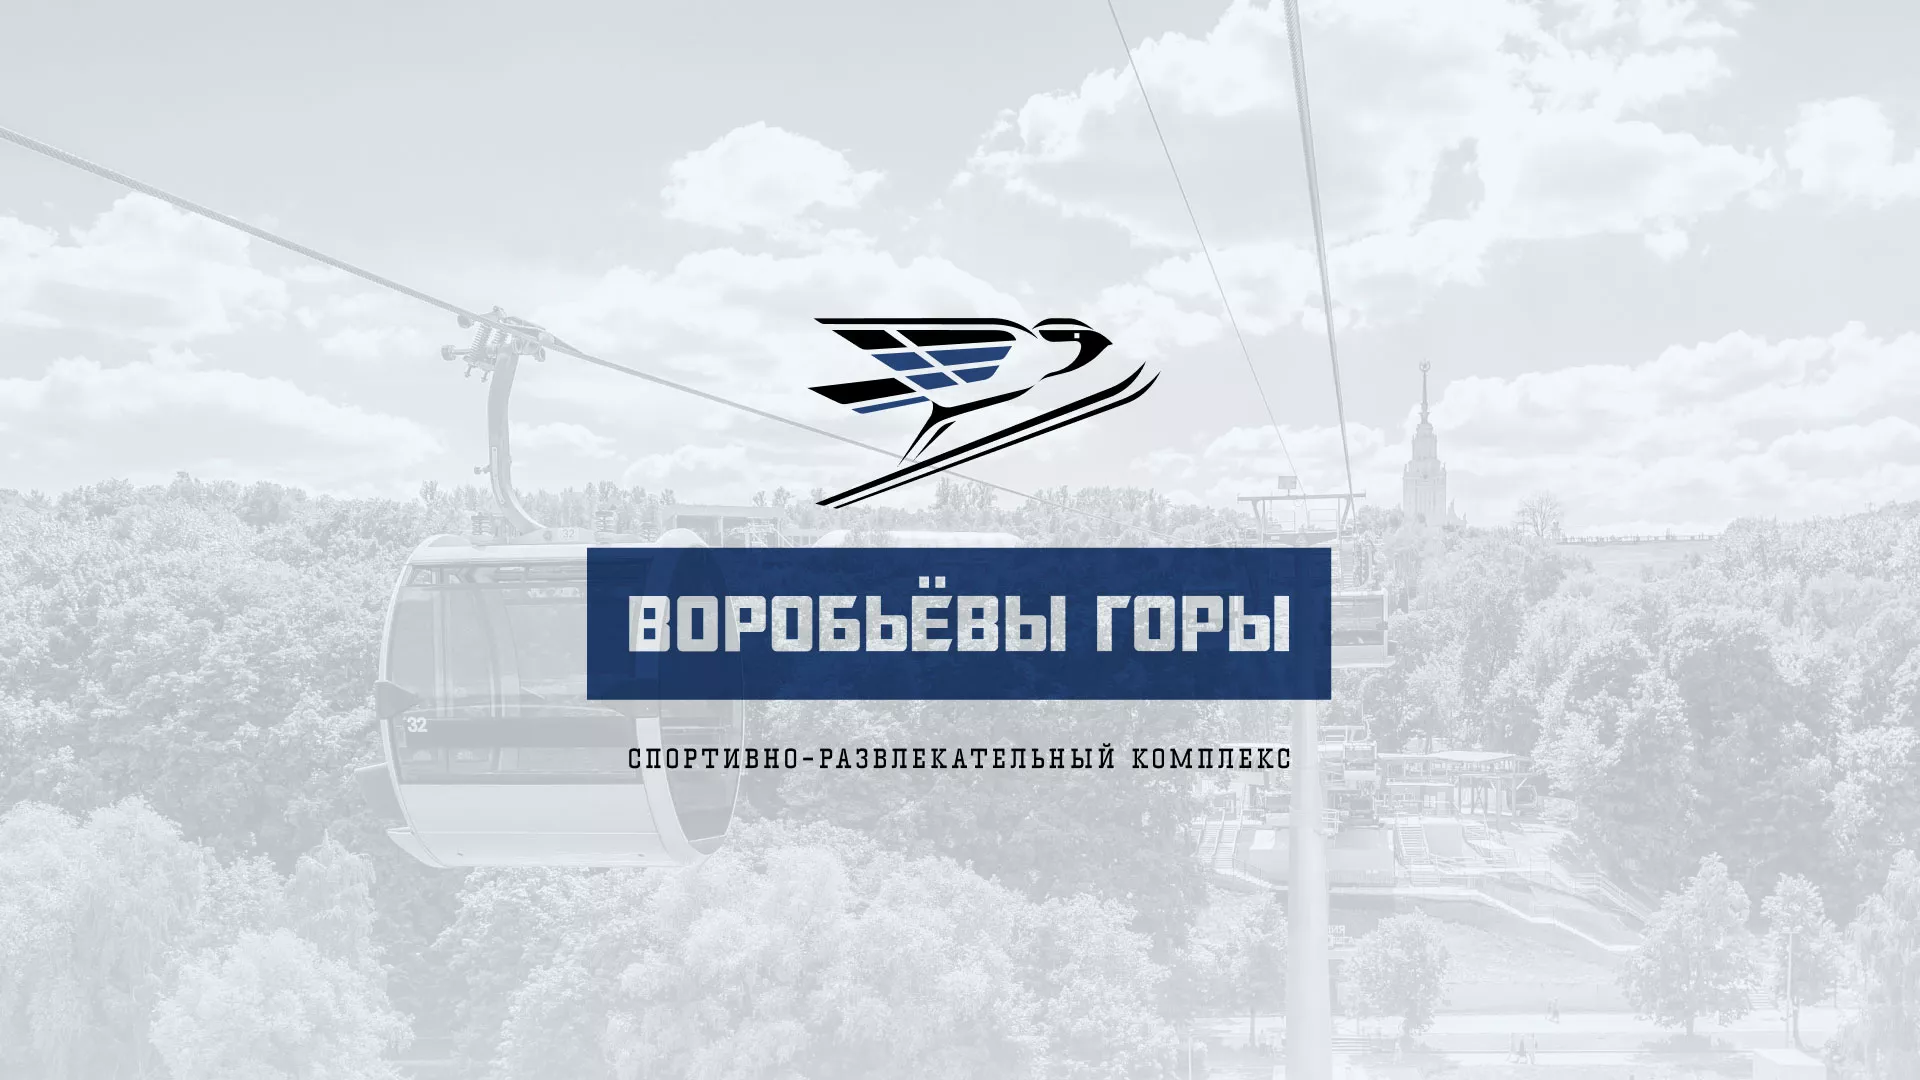 Разработка сайта в Лесосибирске для спортивно-развлекательного комплекса «Воробьёвы горы»